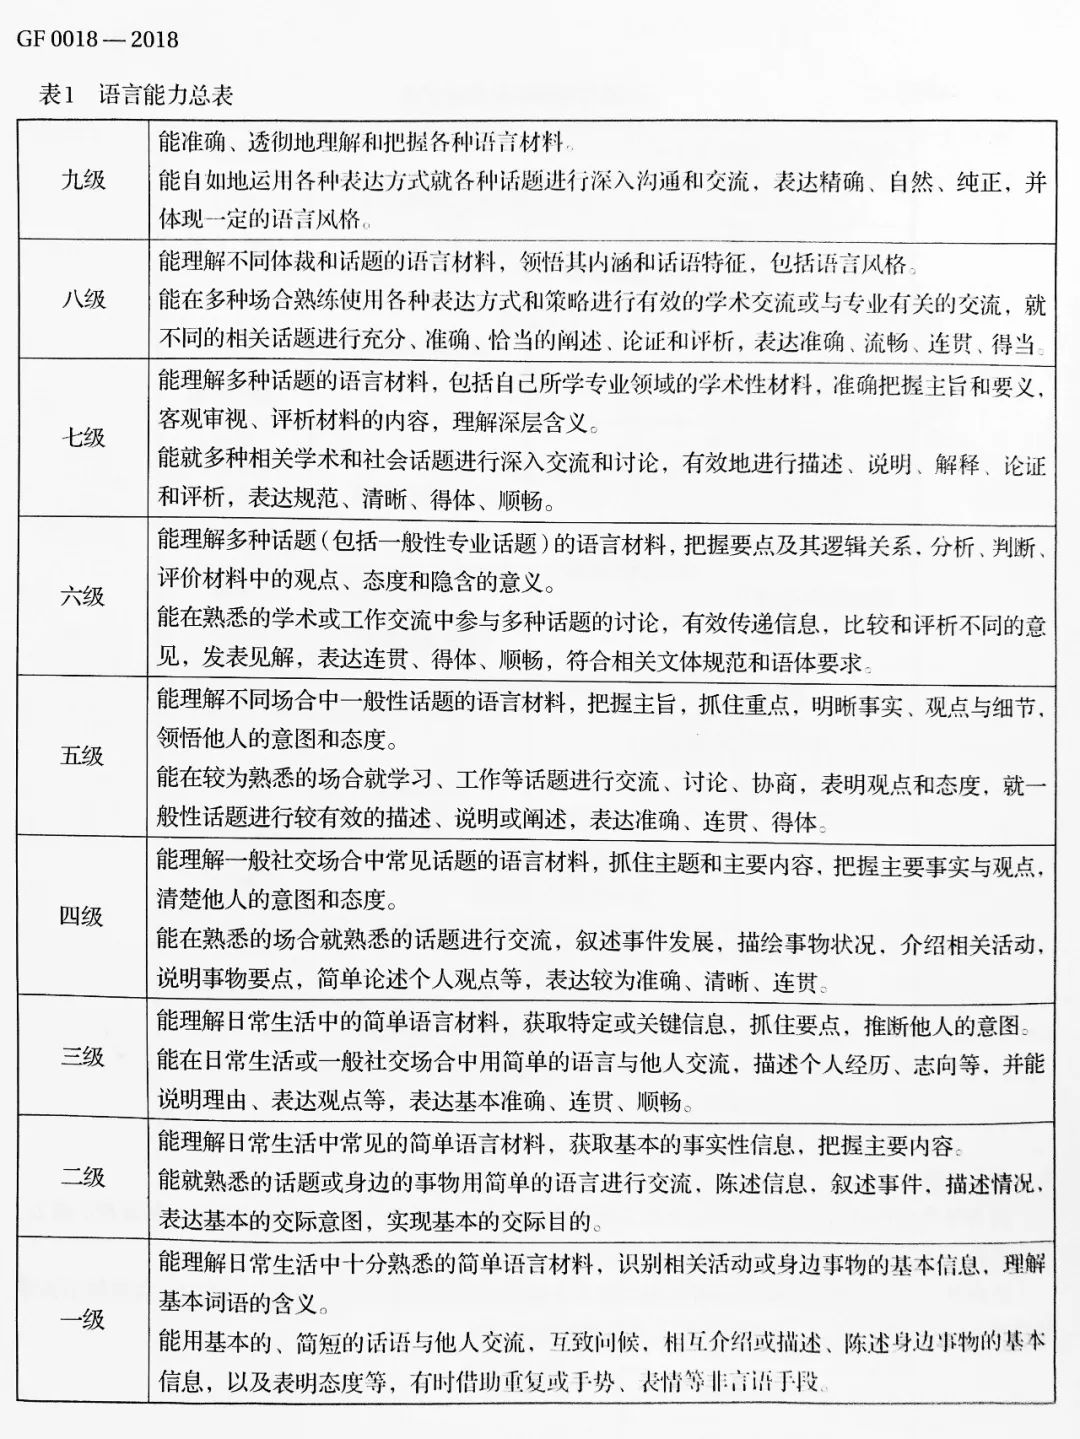 《中国英语能力等级量表》6月1日起实施|看看